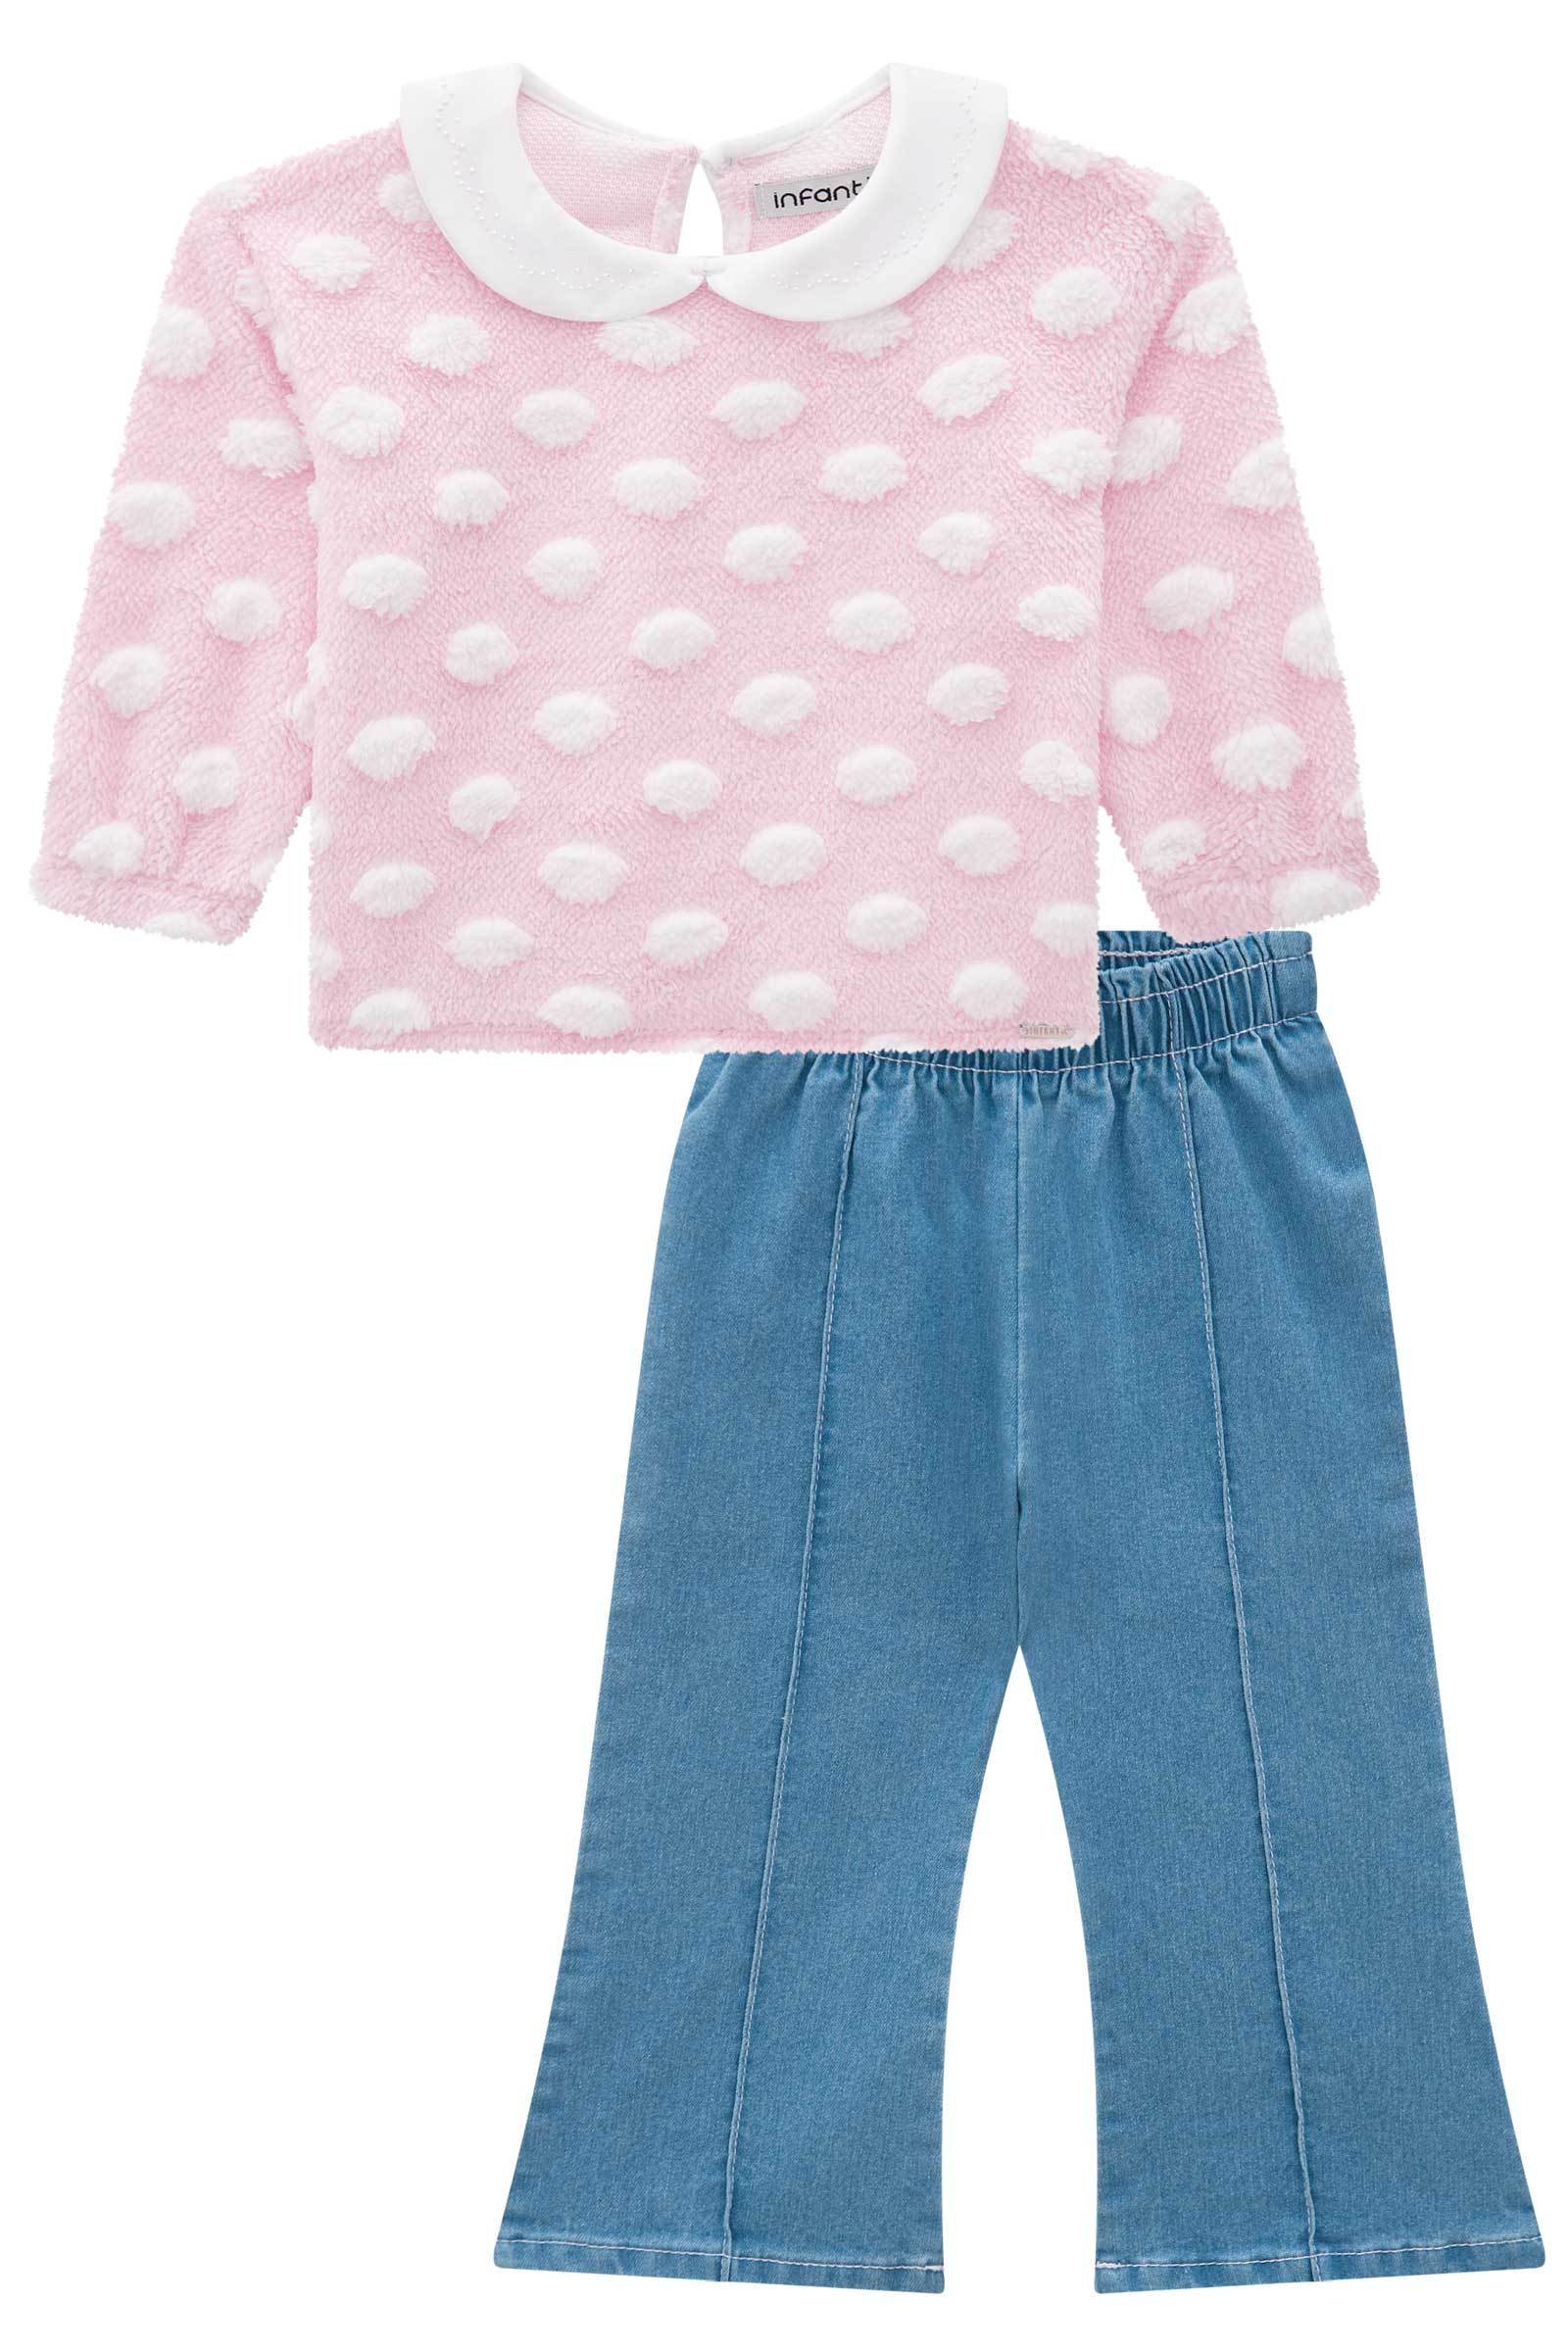 Conjunto de Blusão em Pelo Poá com Calça Flare em Jeans Bellini 71503 Infanti